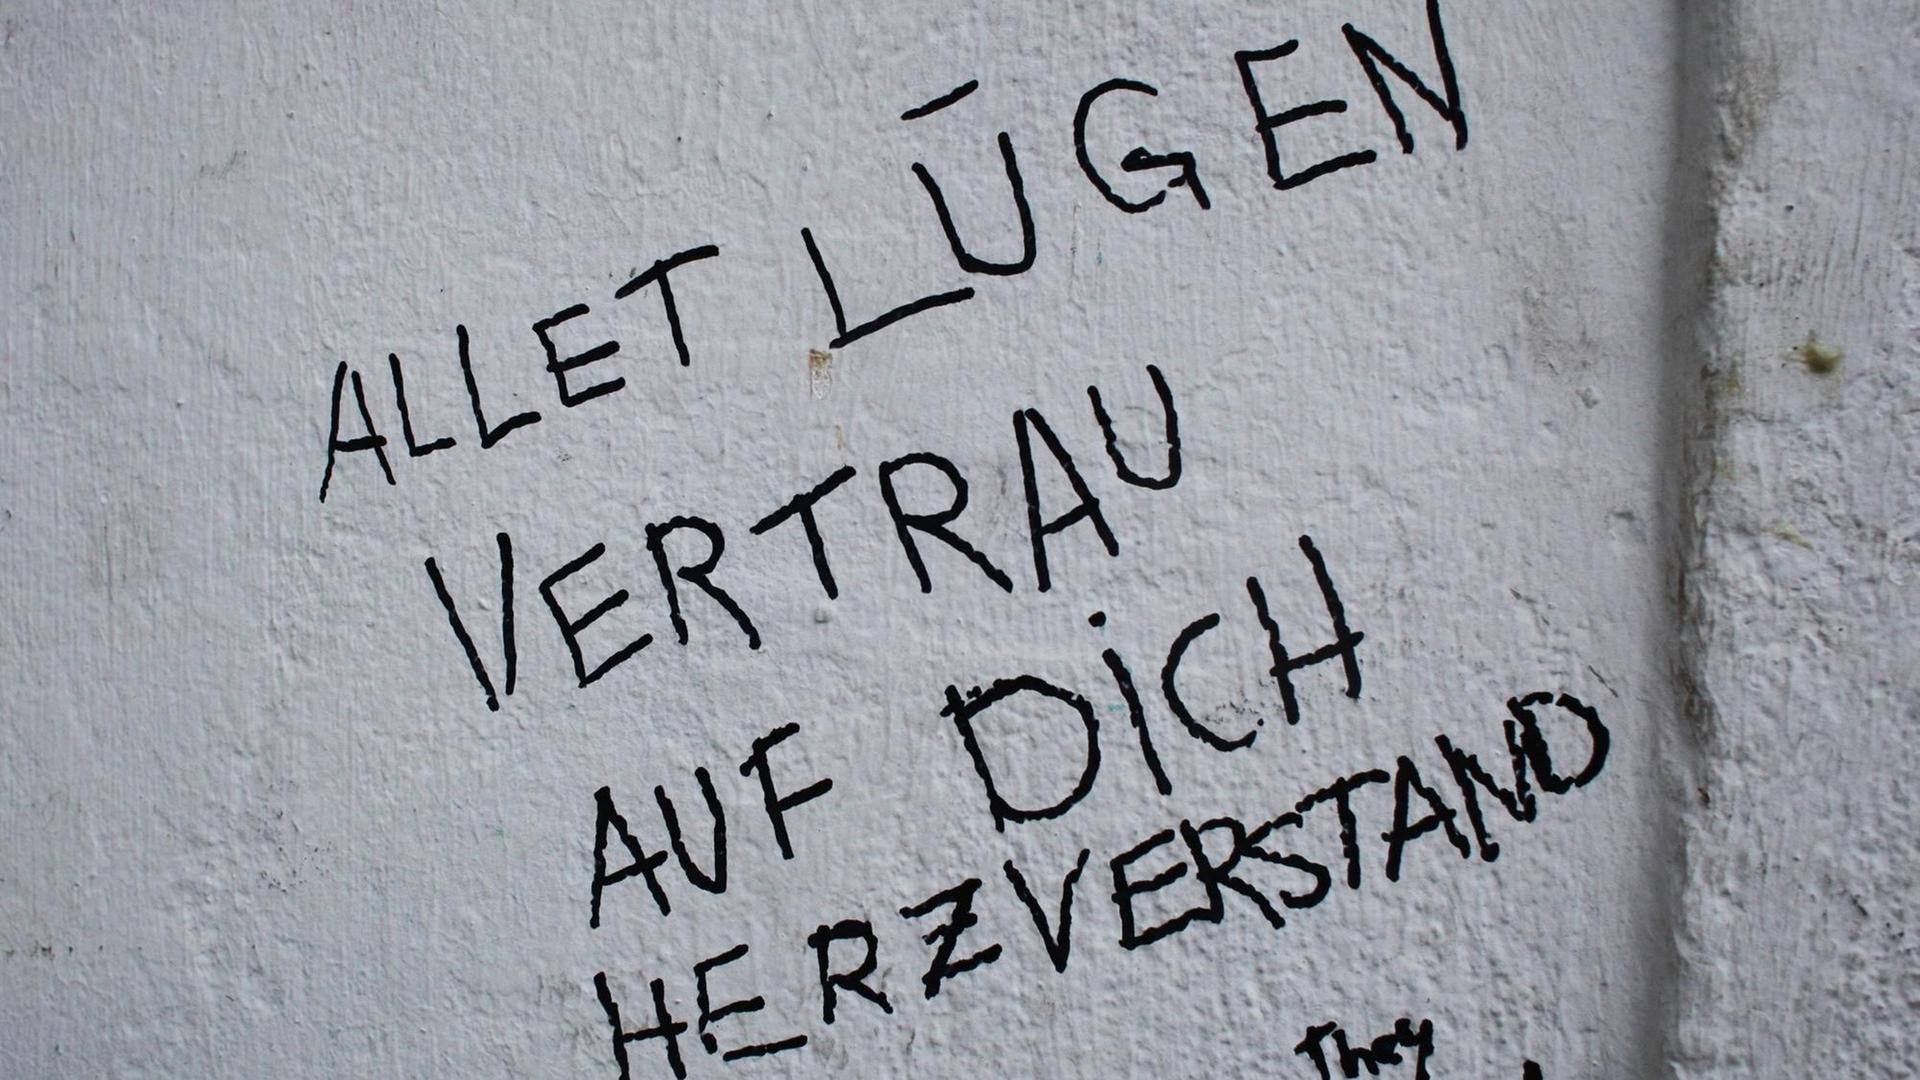 Alltagspoesie "Allet Lügen. Vertrau auf dich, Herzverstand" auf einer Hauswand in Berlin.